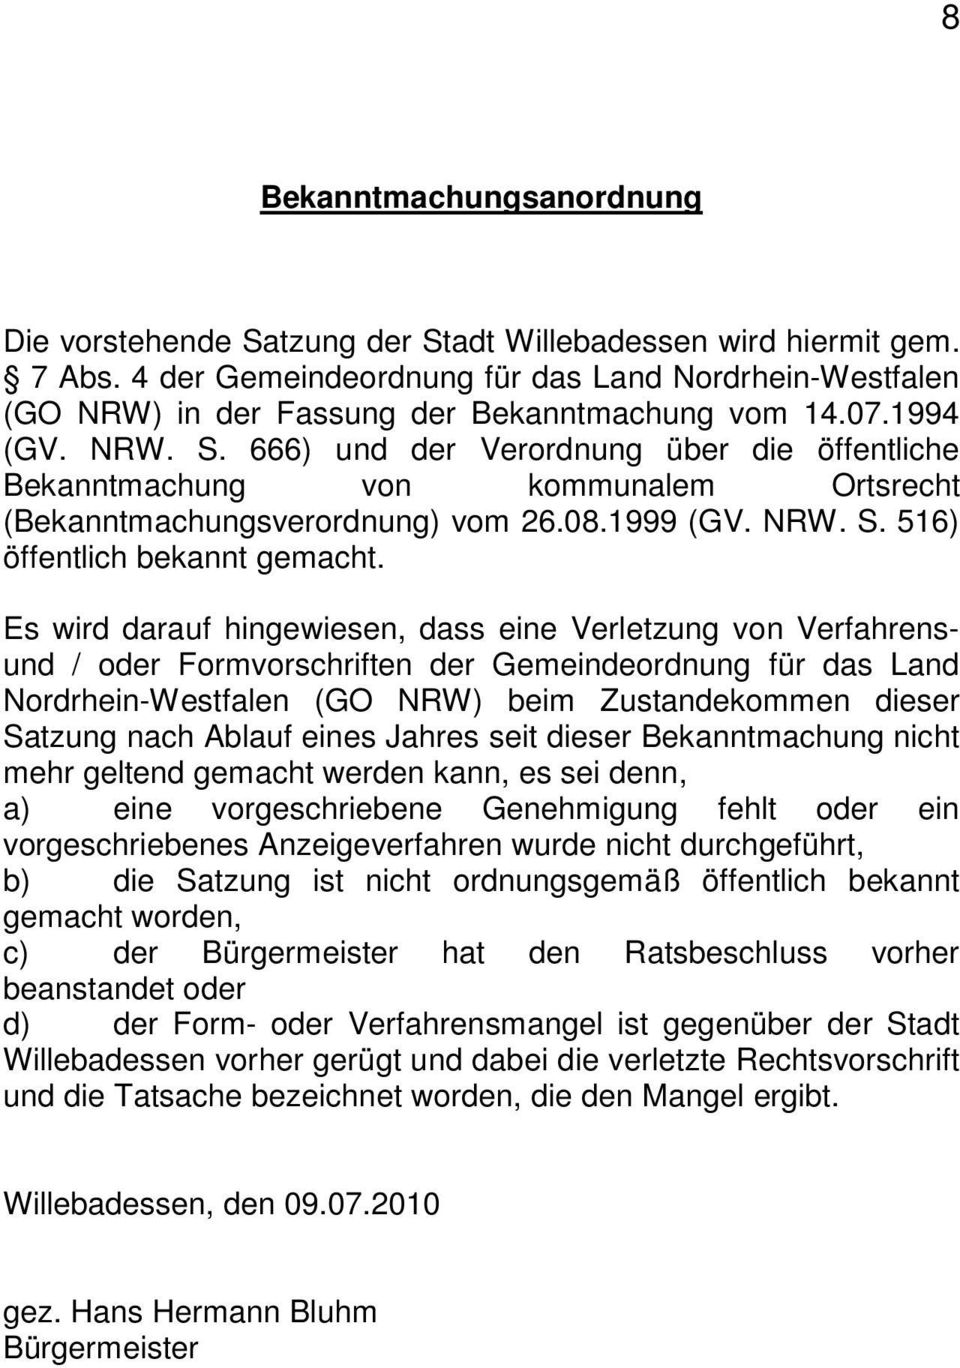 666) und der Verordnung über die öffentliche Bekanntmachung von kommunalem Ortsrecht (Bekanntmachungsverordnung) vom 26.08.1999 (GV. NRW. S. 516) öffentlich bekannt gemacht.